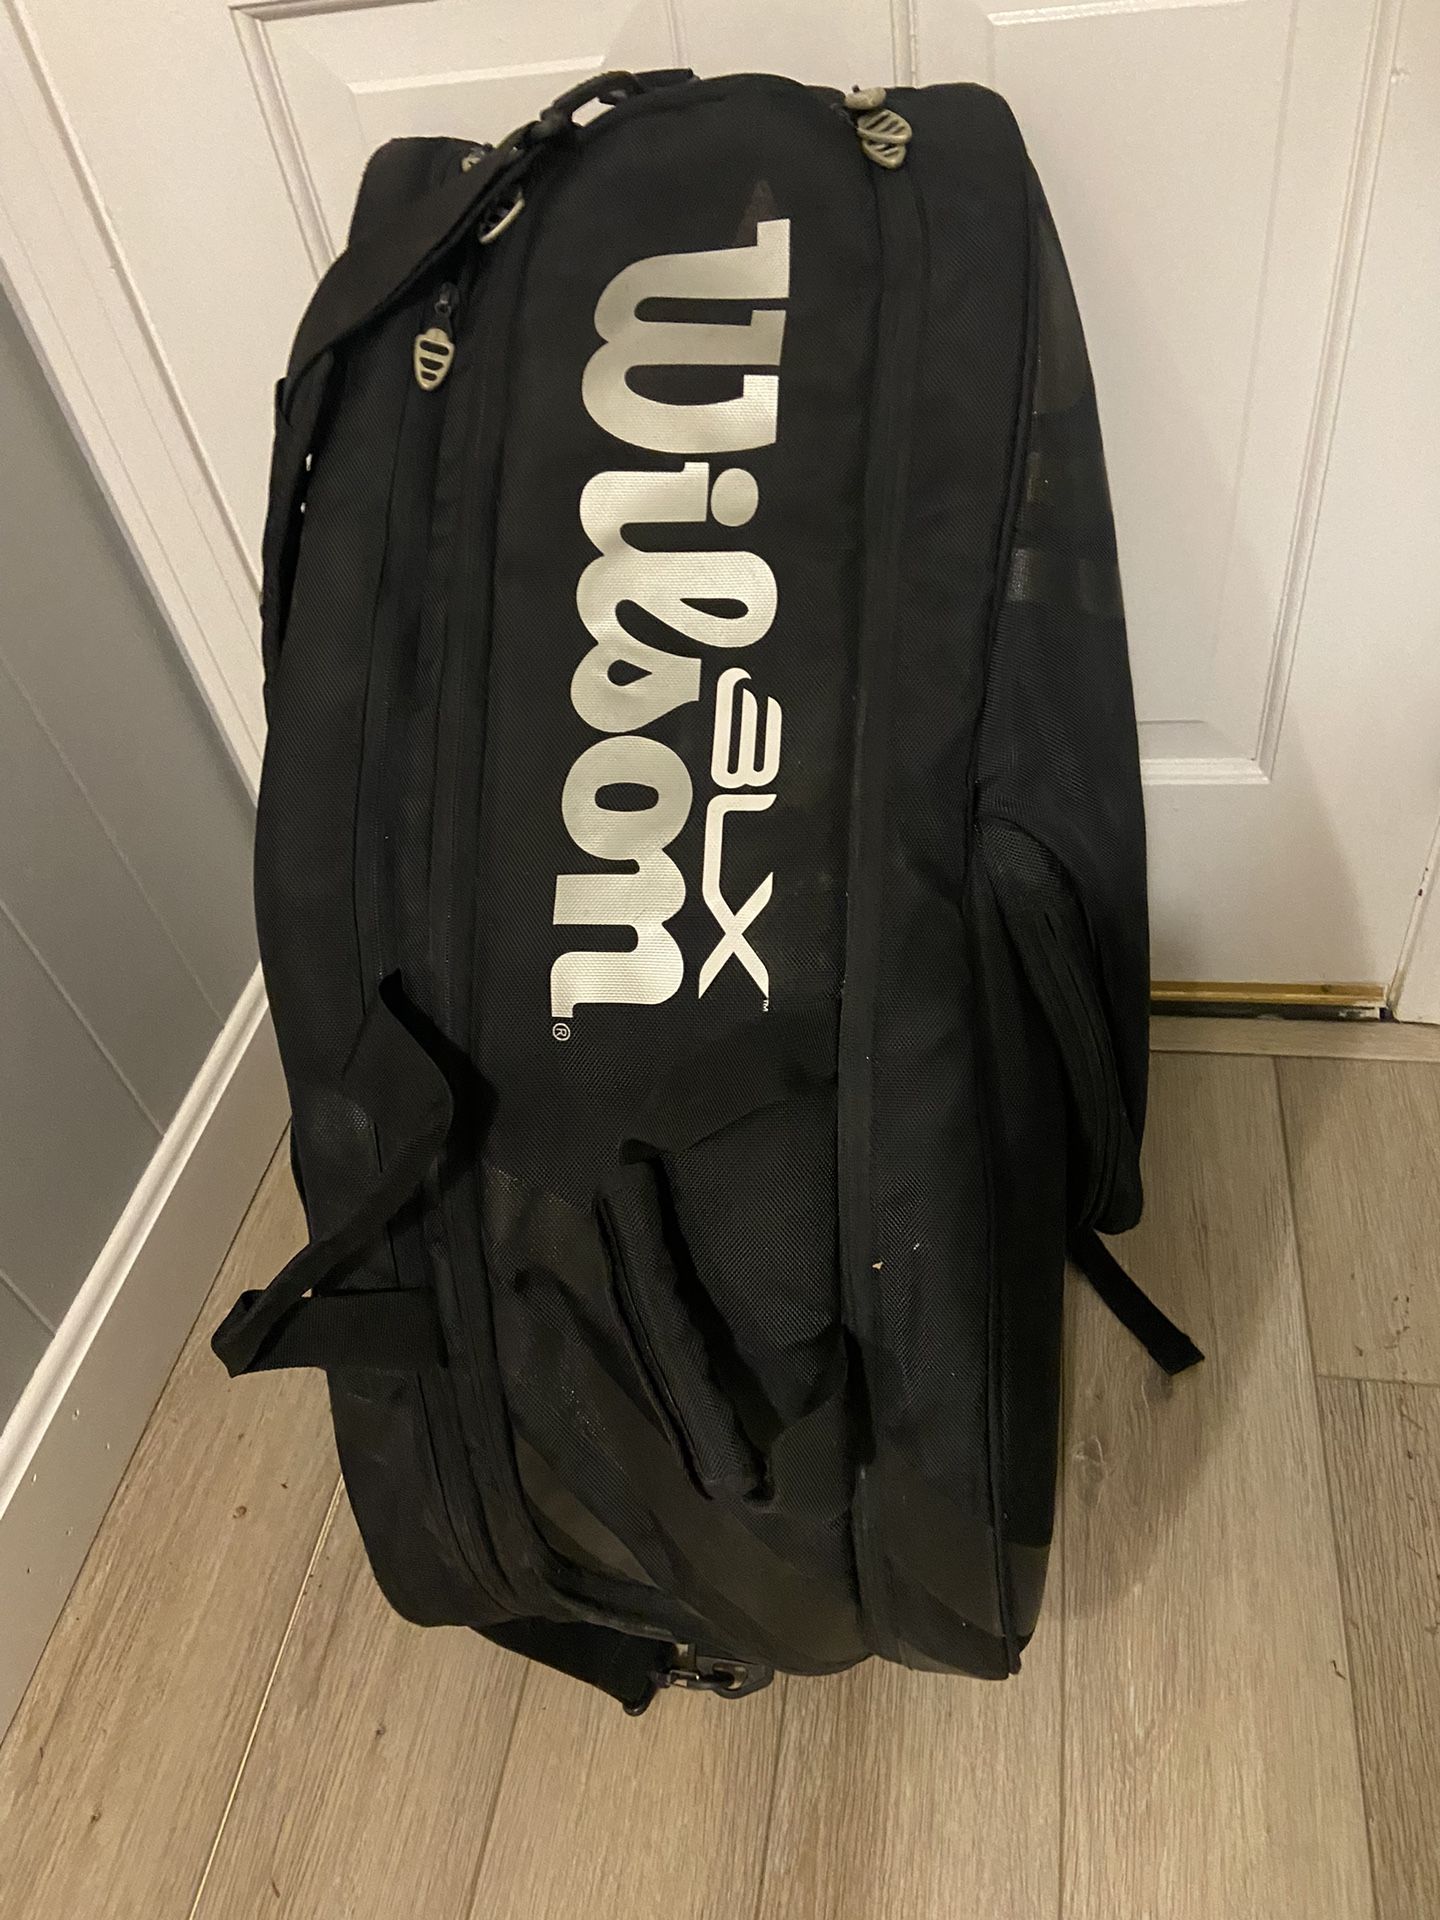 wilson bxl tennis racket bag black back rack pack